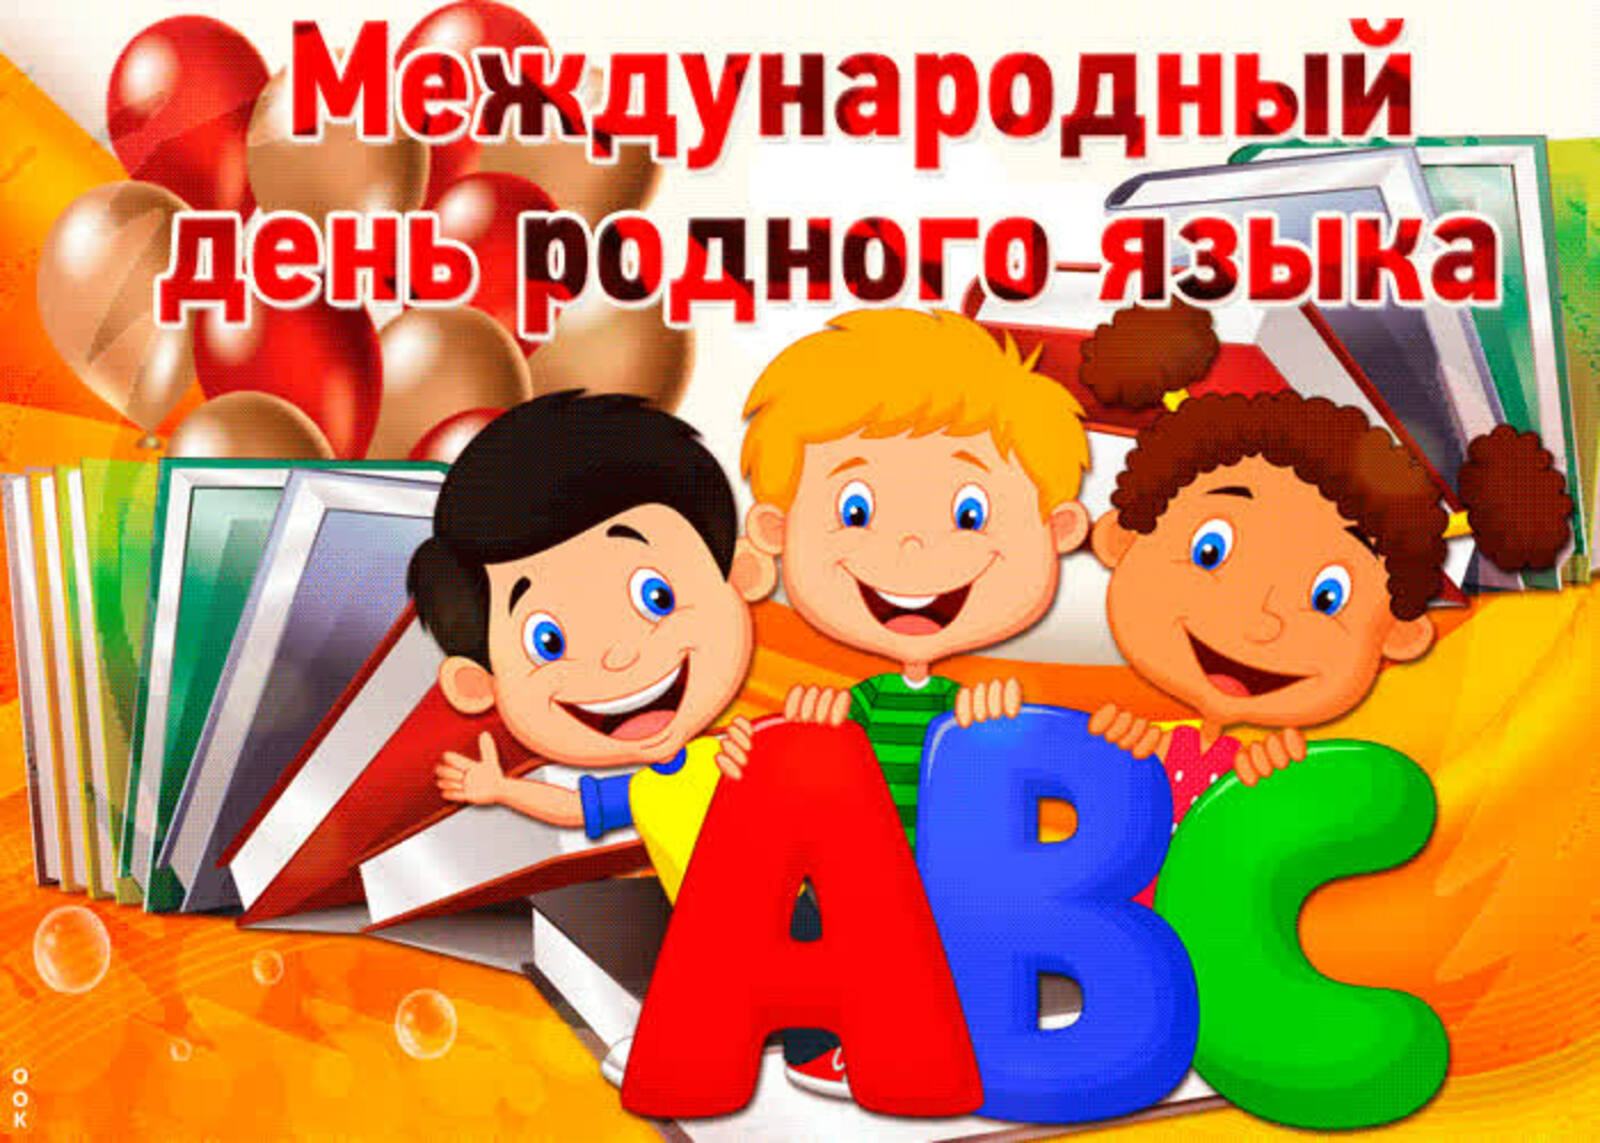 21 февраля– Международный день родного языка.